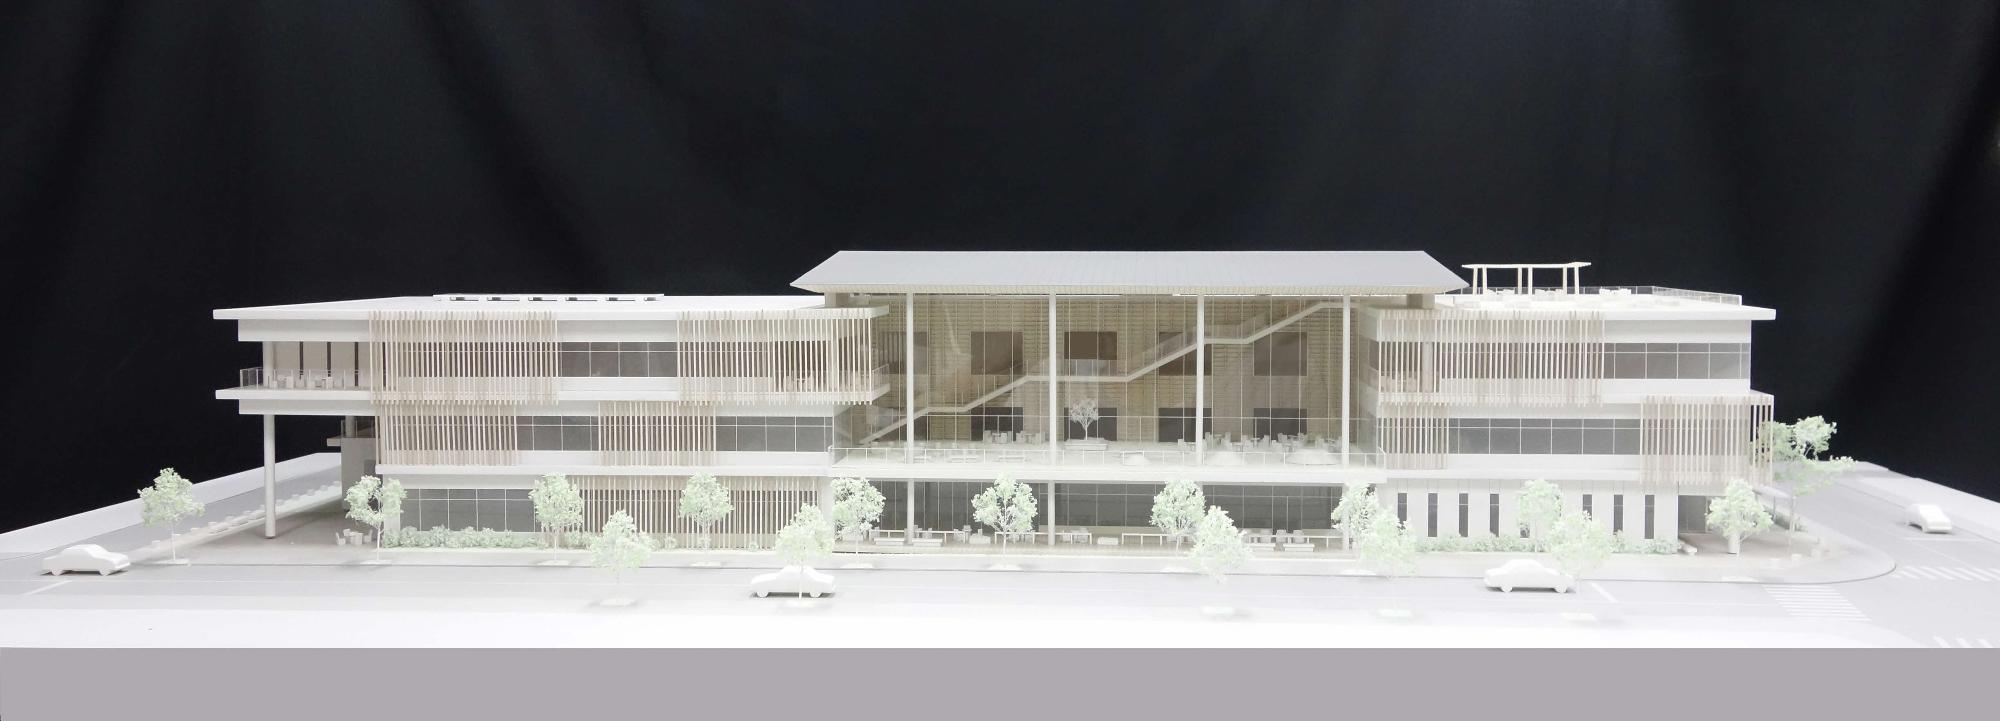 3階建ての複合交流拠点の基本設計模型を正面から写した写真